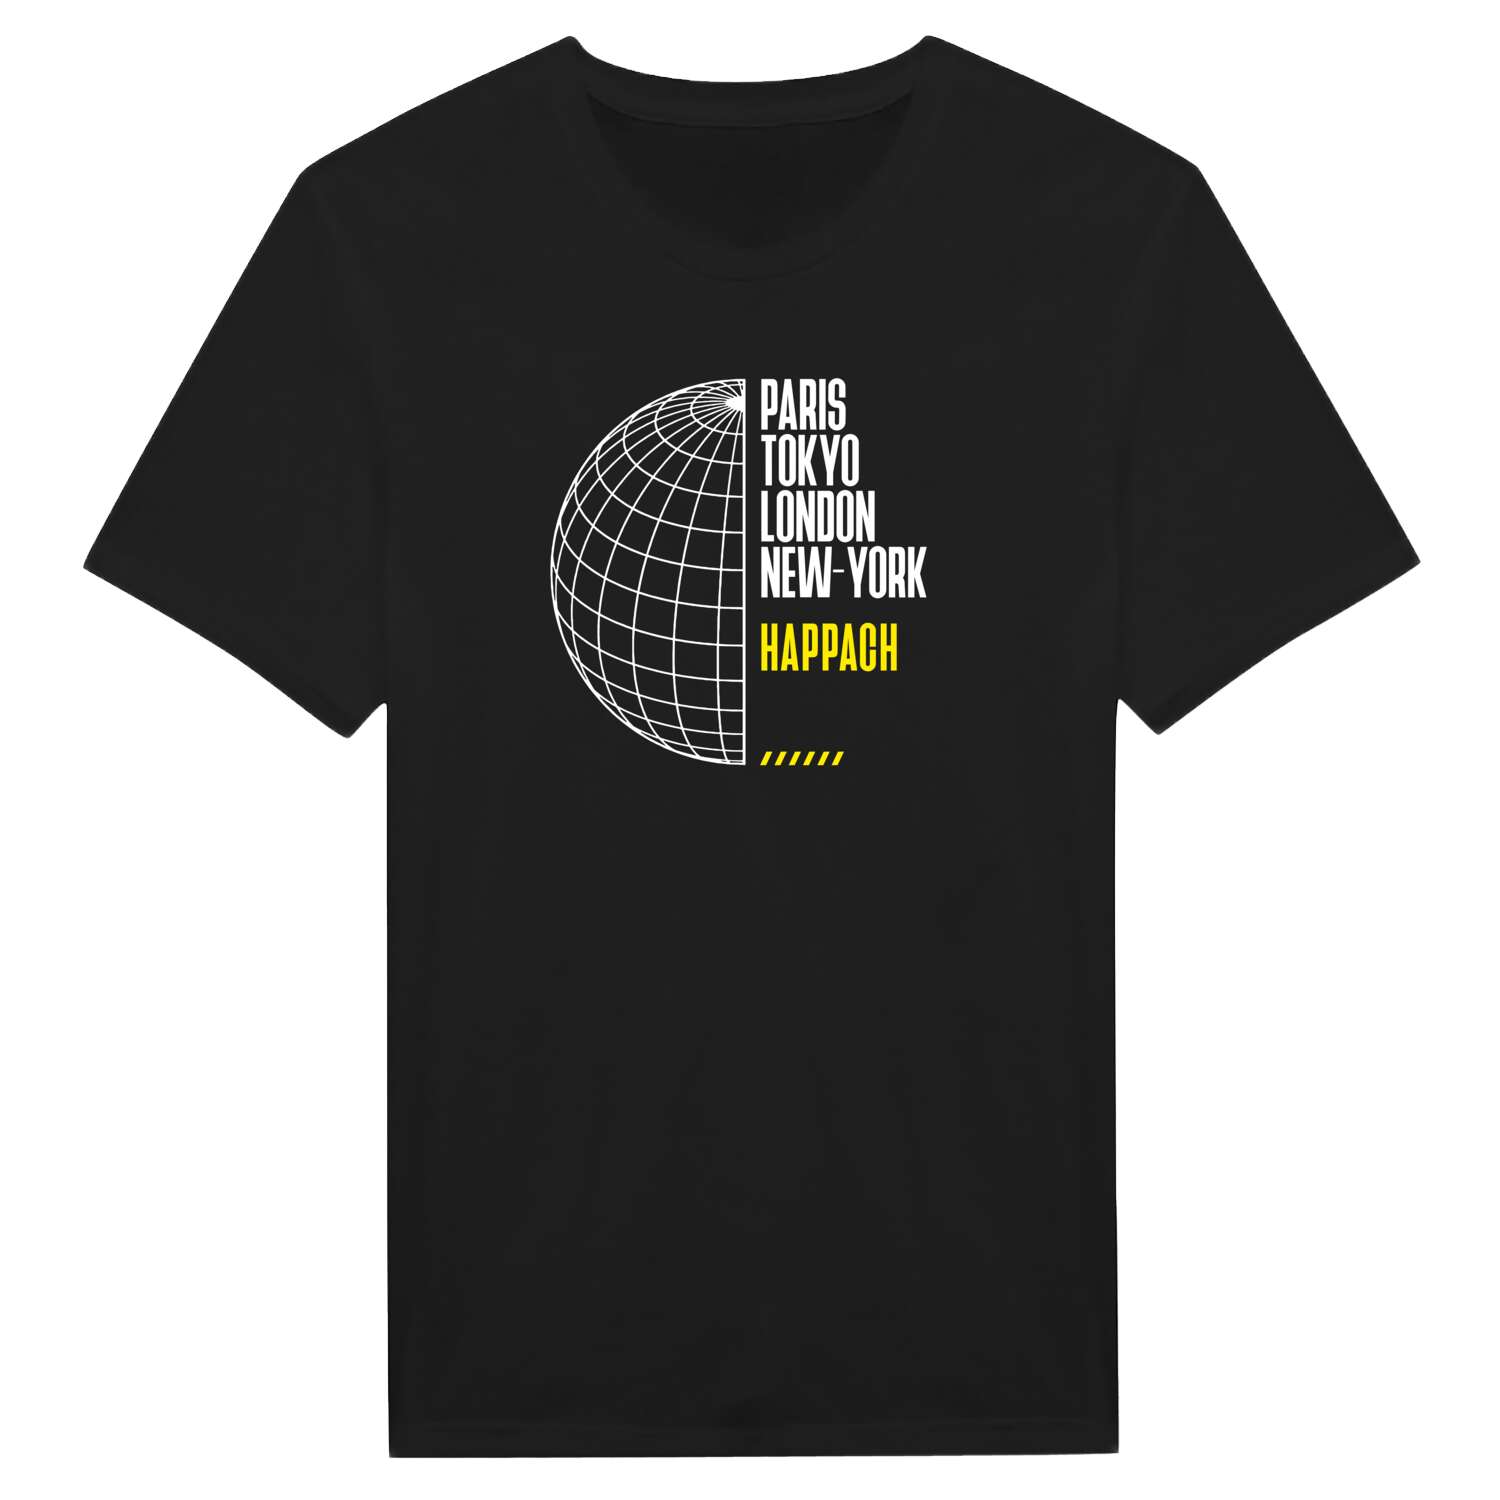 Happach T-Shirt »Paris Tokyo London«